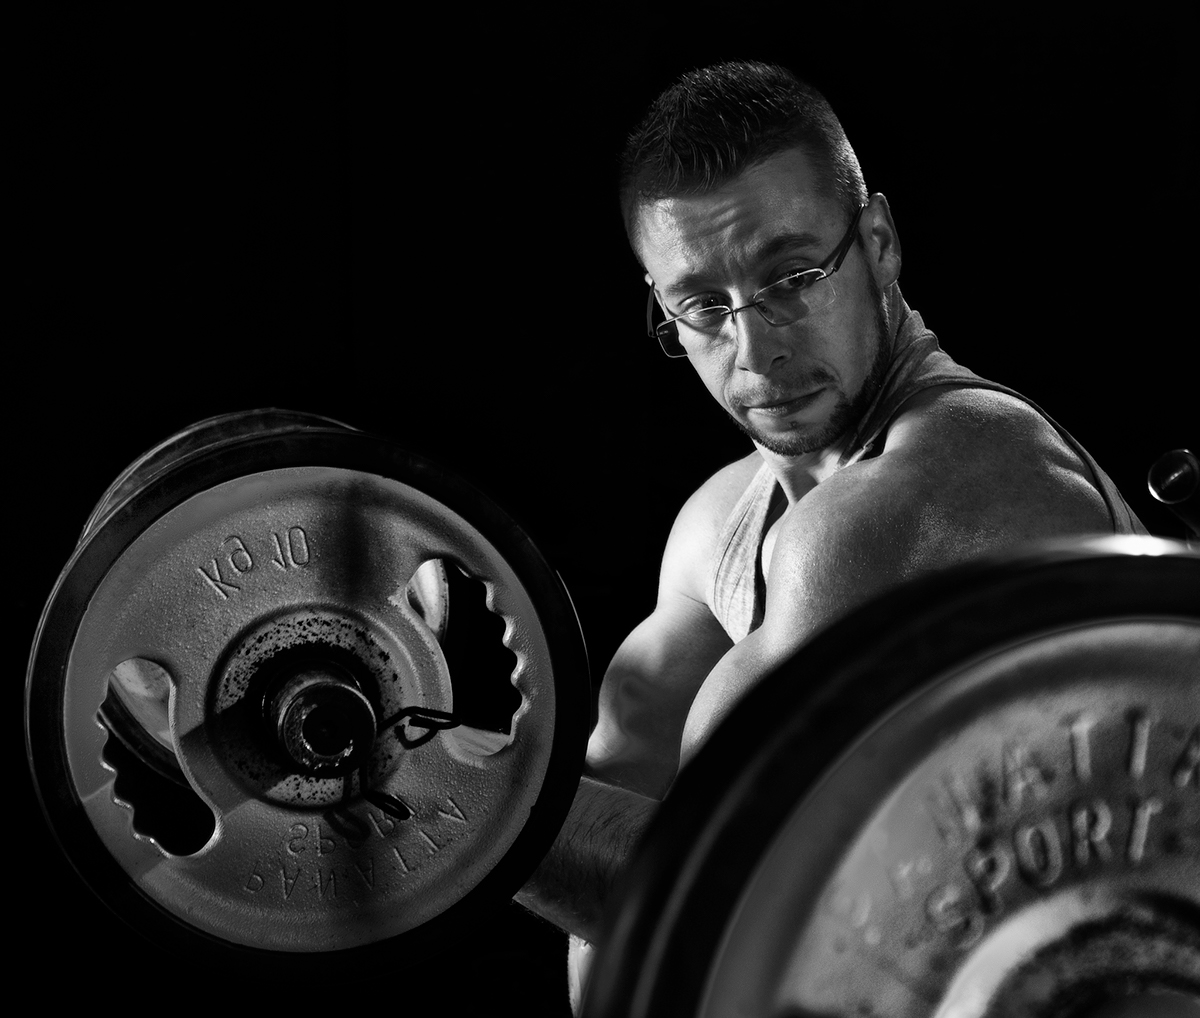 bodybuilder supplements sport gym nutrishock Catalogue weights nutrition training fitness